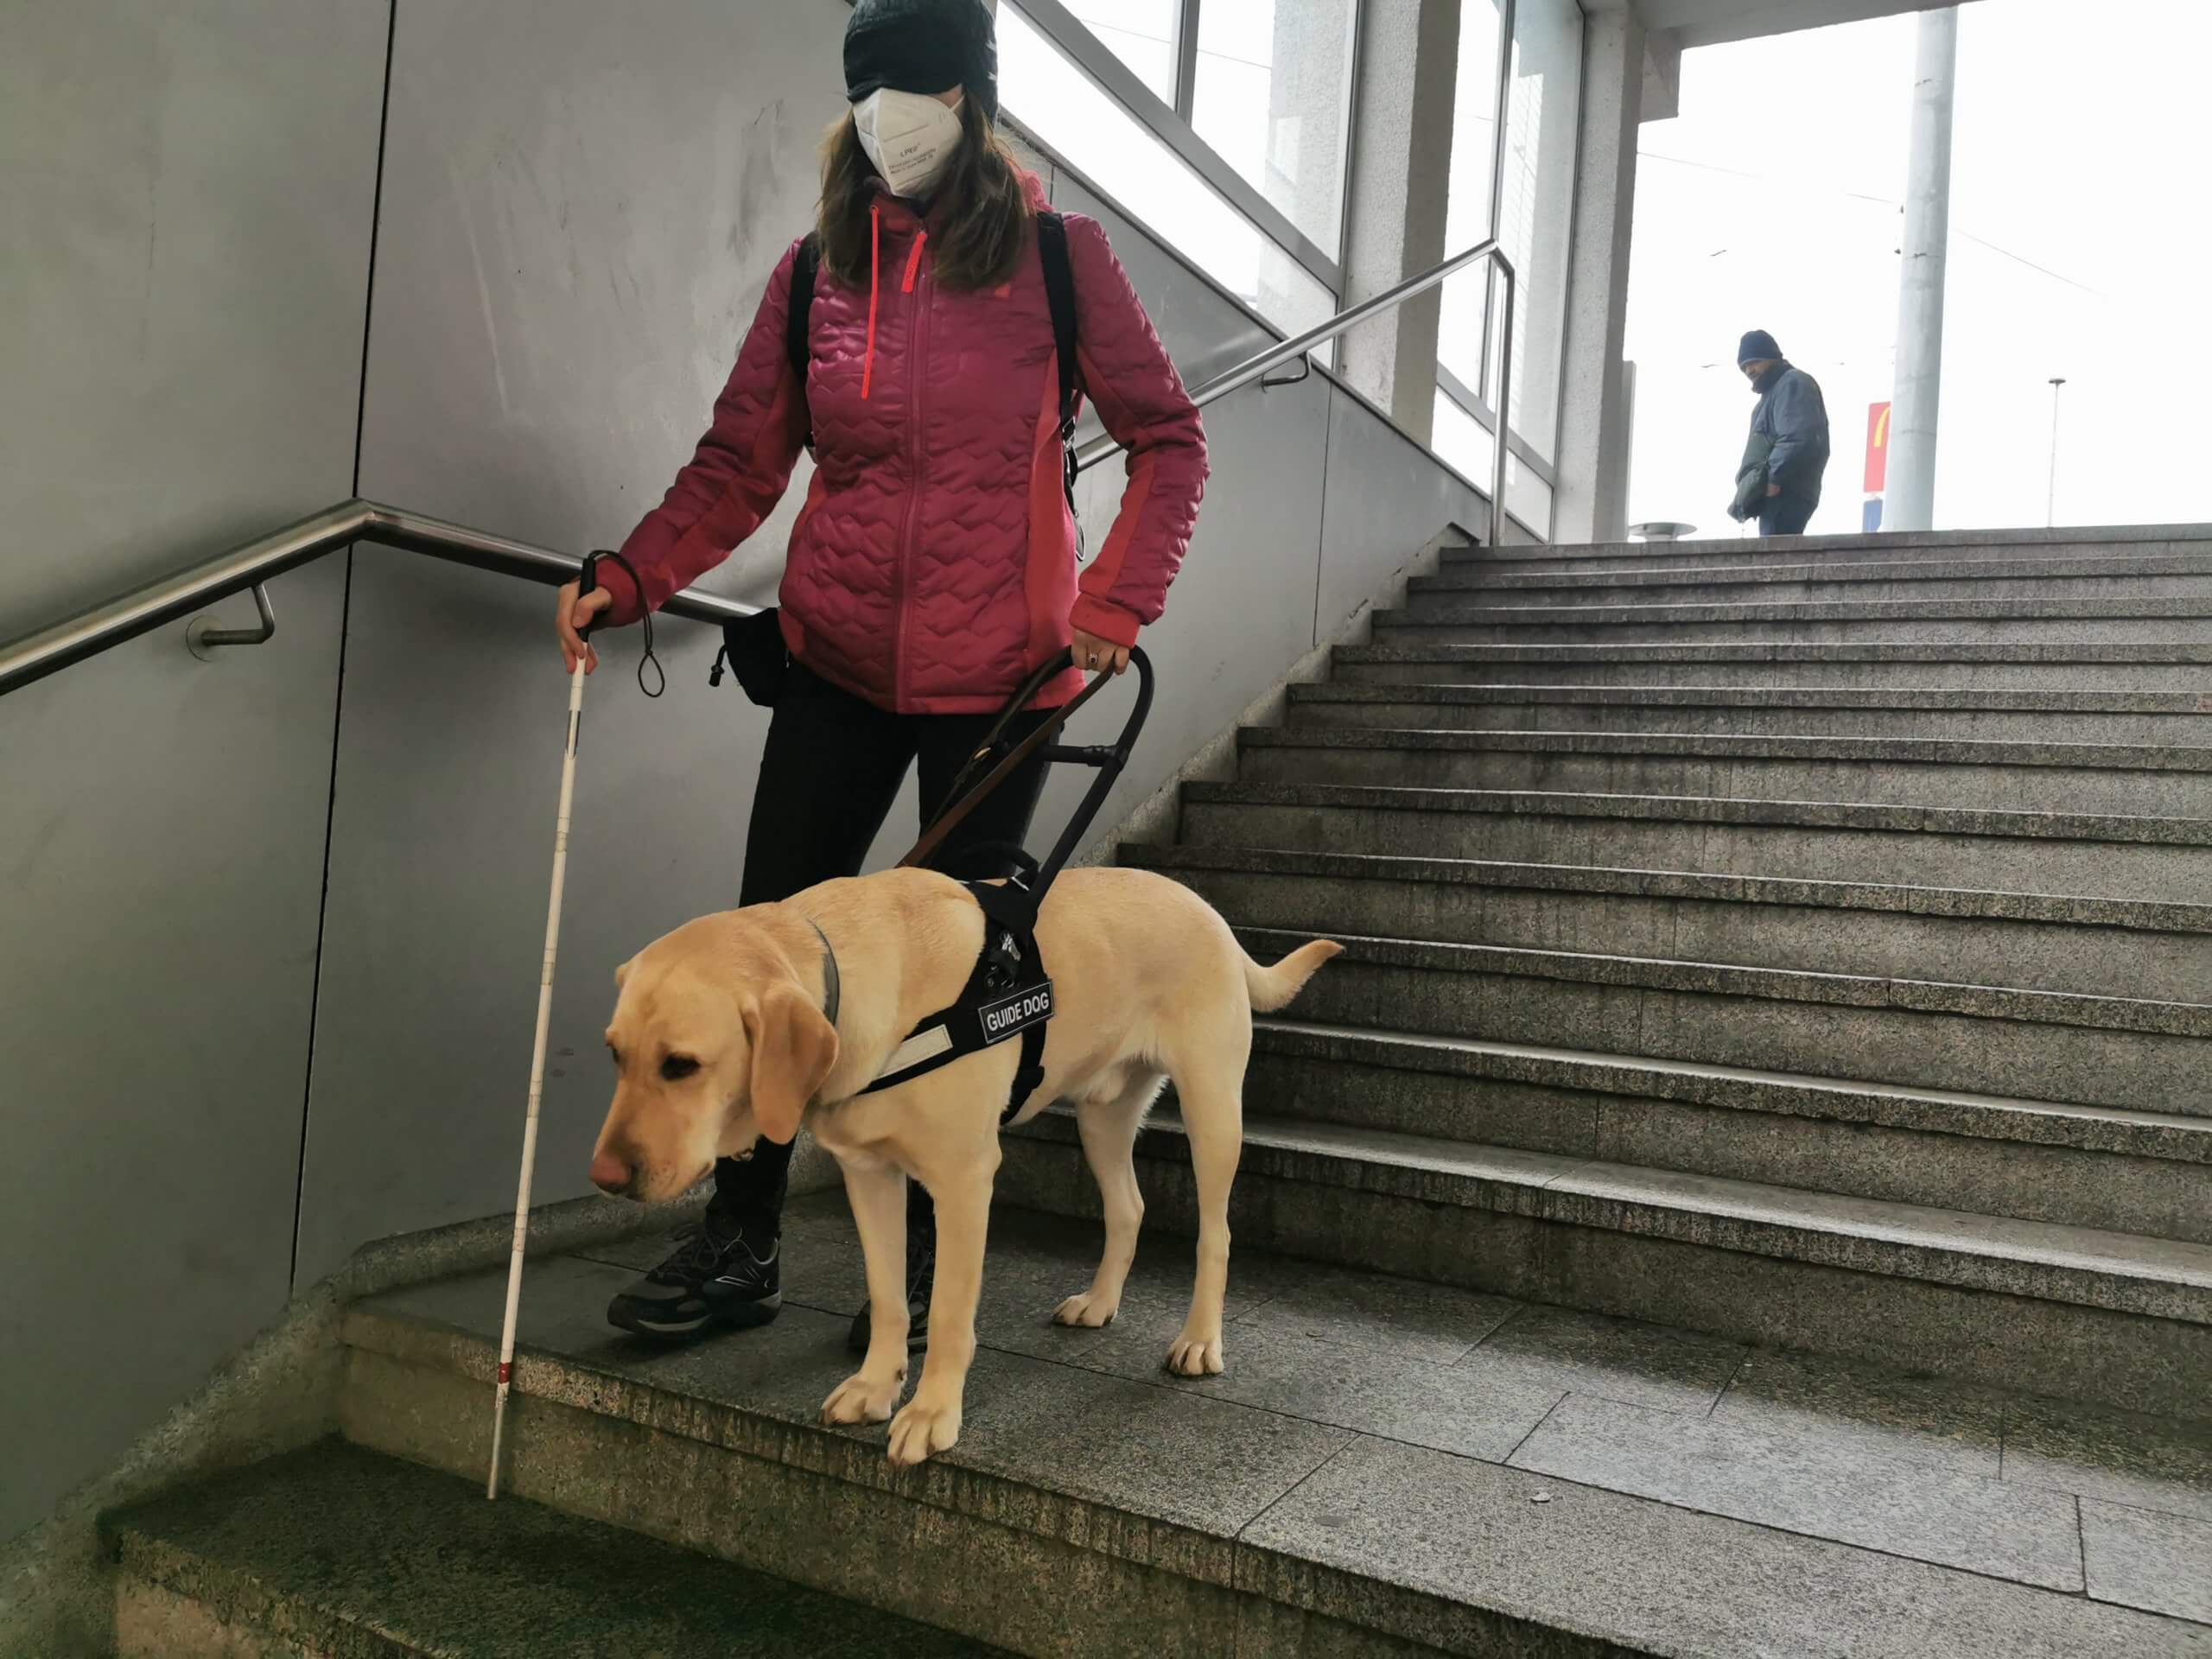 Vodiaci pes stojí na okraji schodov a pozerá sa kam pokračujú, cvičiteľka s prekrytými očami si kontroluje hĺbku schodu.